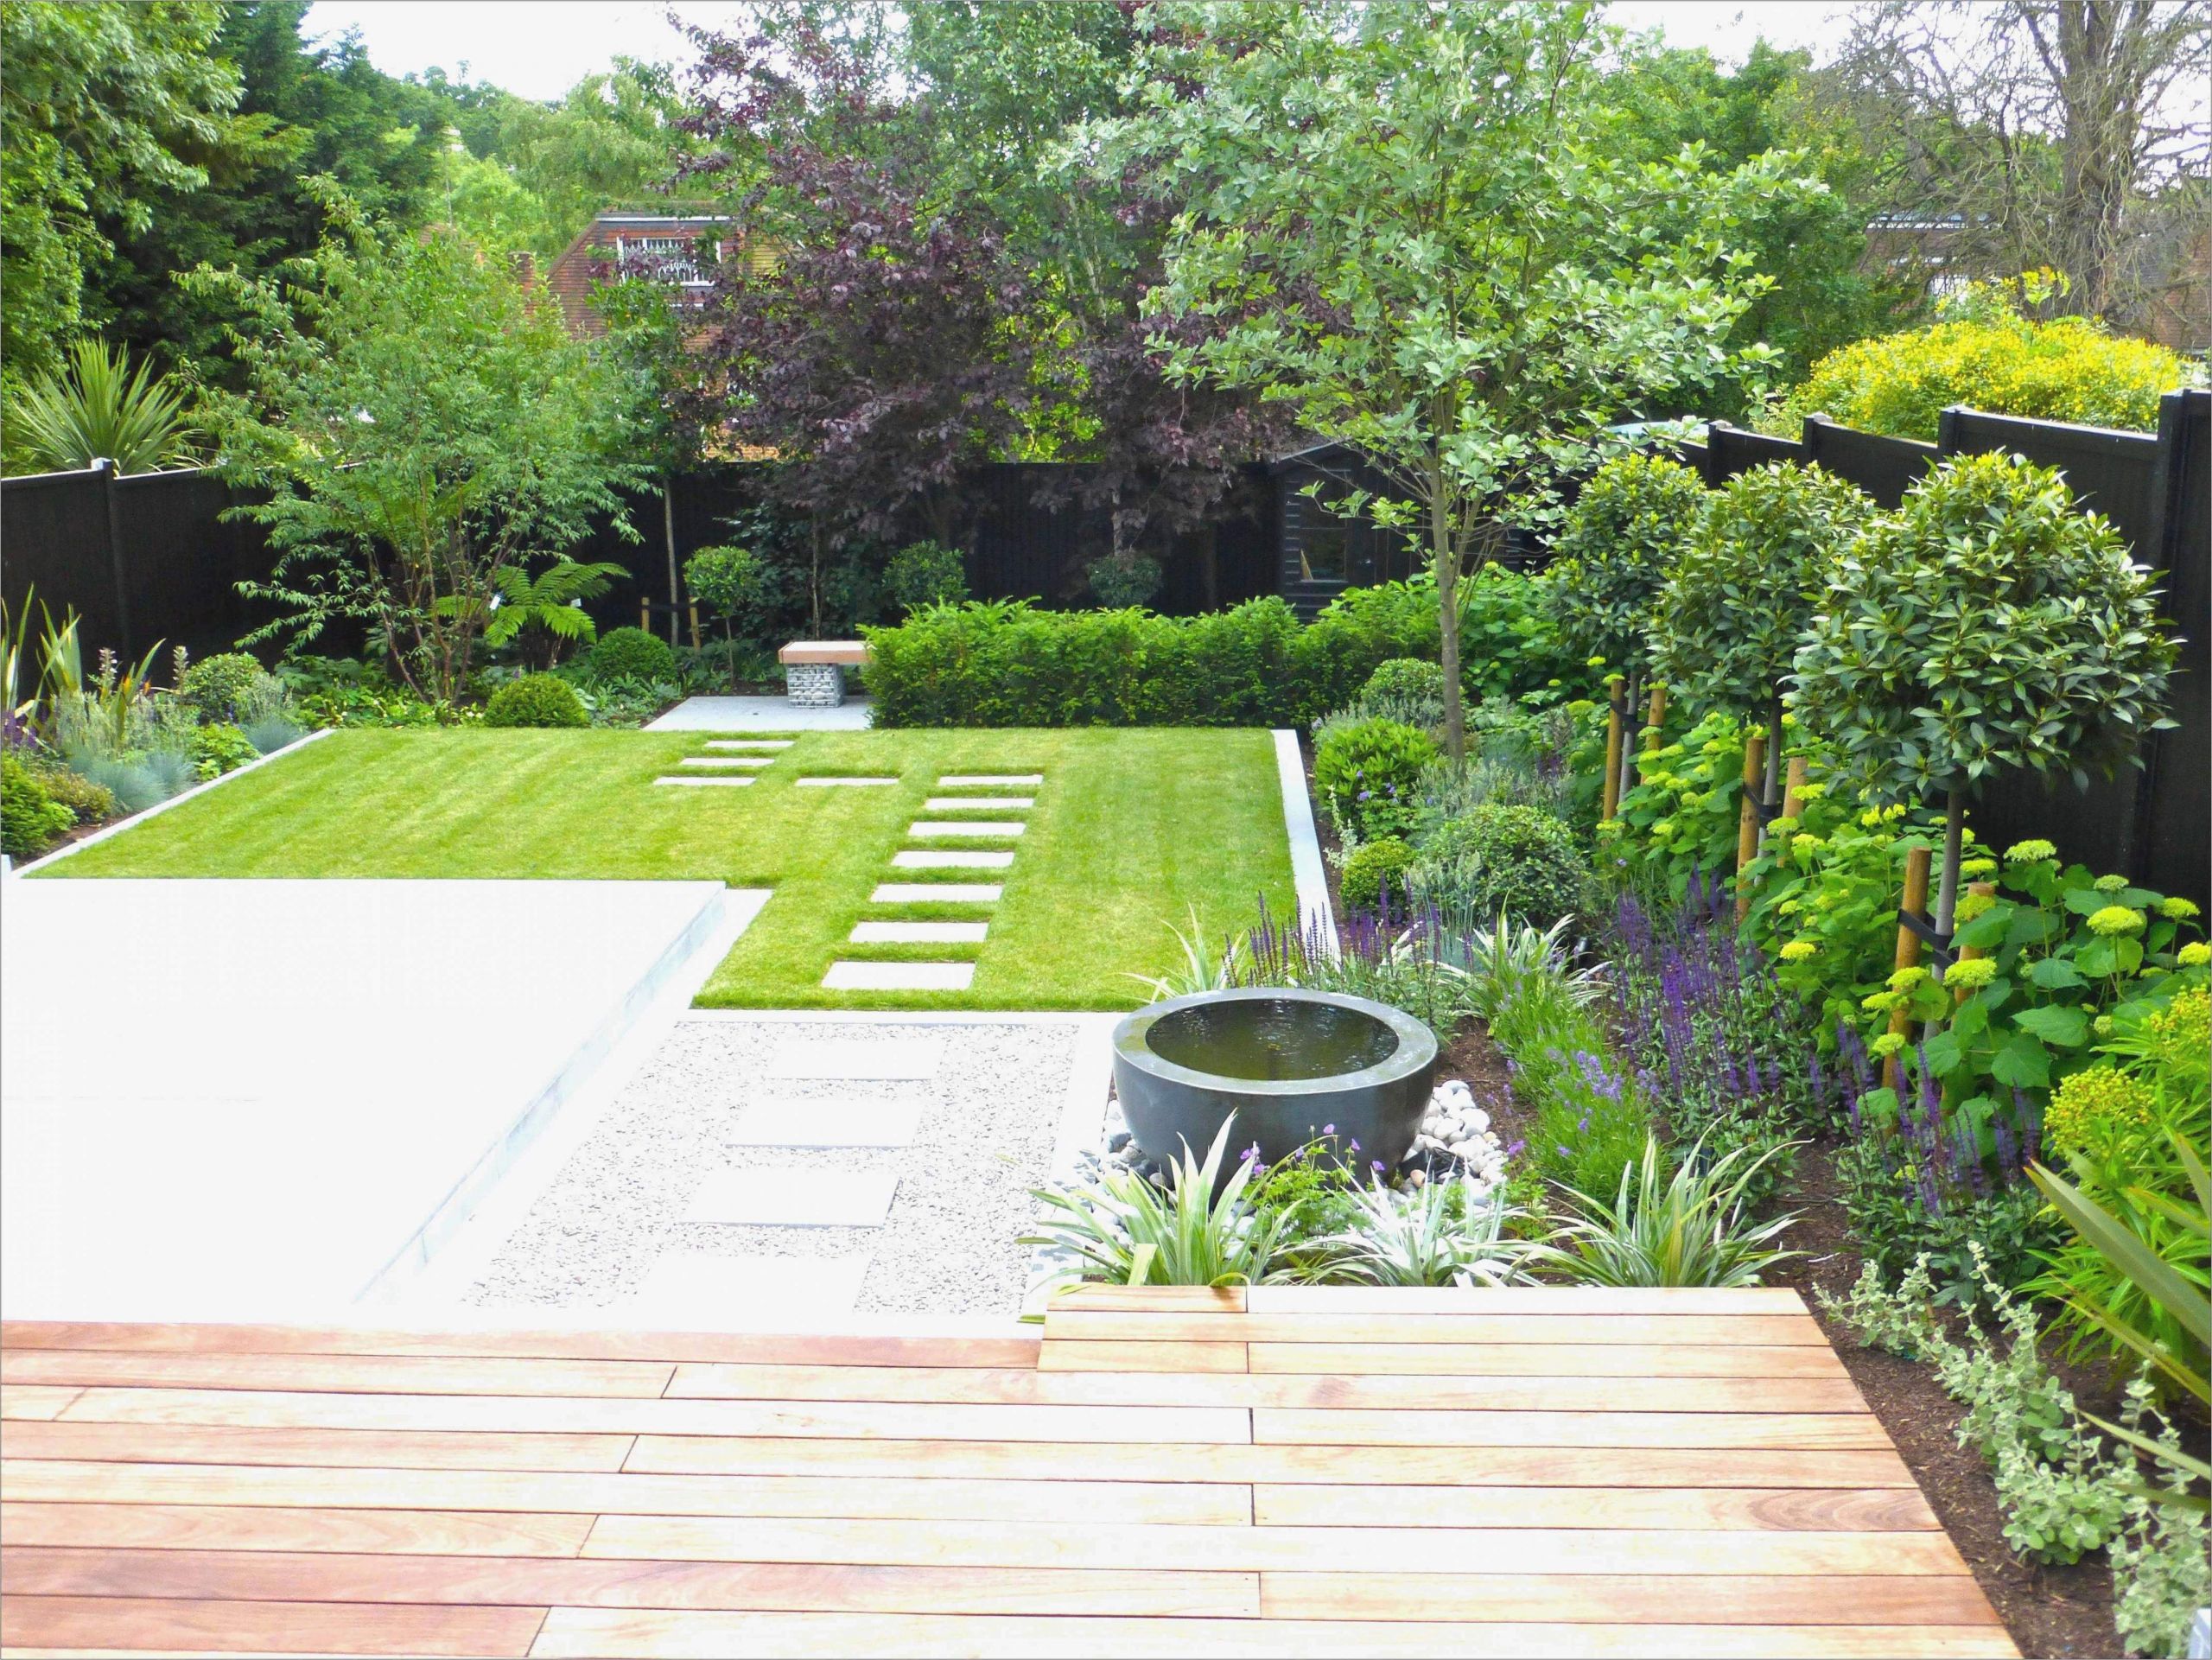 Sitzecken Im Garten Mit überdachung Inspirierend Ideen Für Grillplatz Im Garten — Temobardz Home Blog